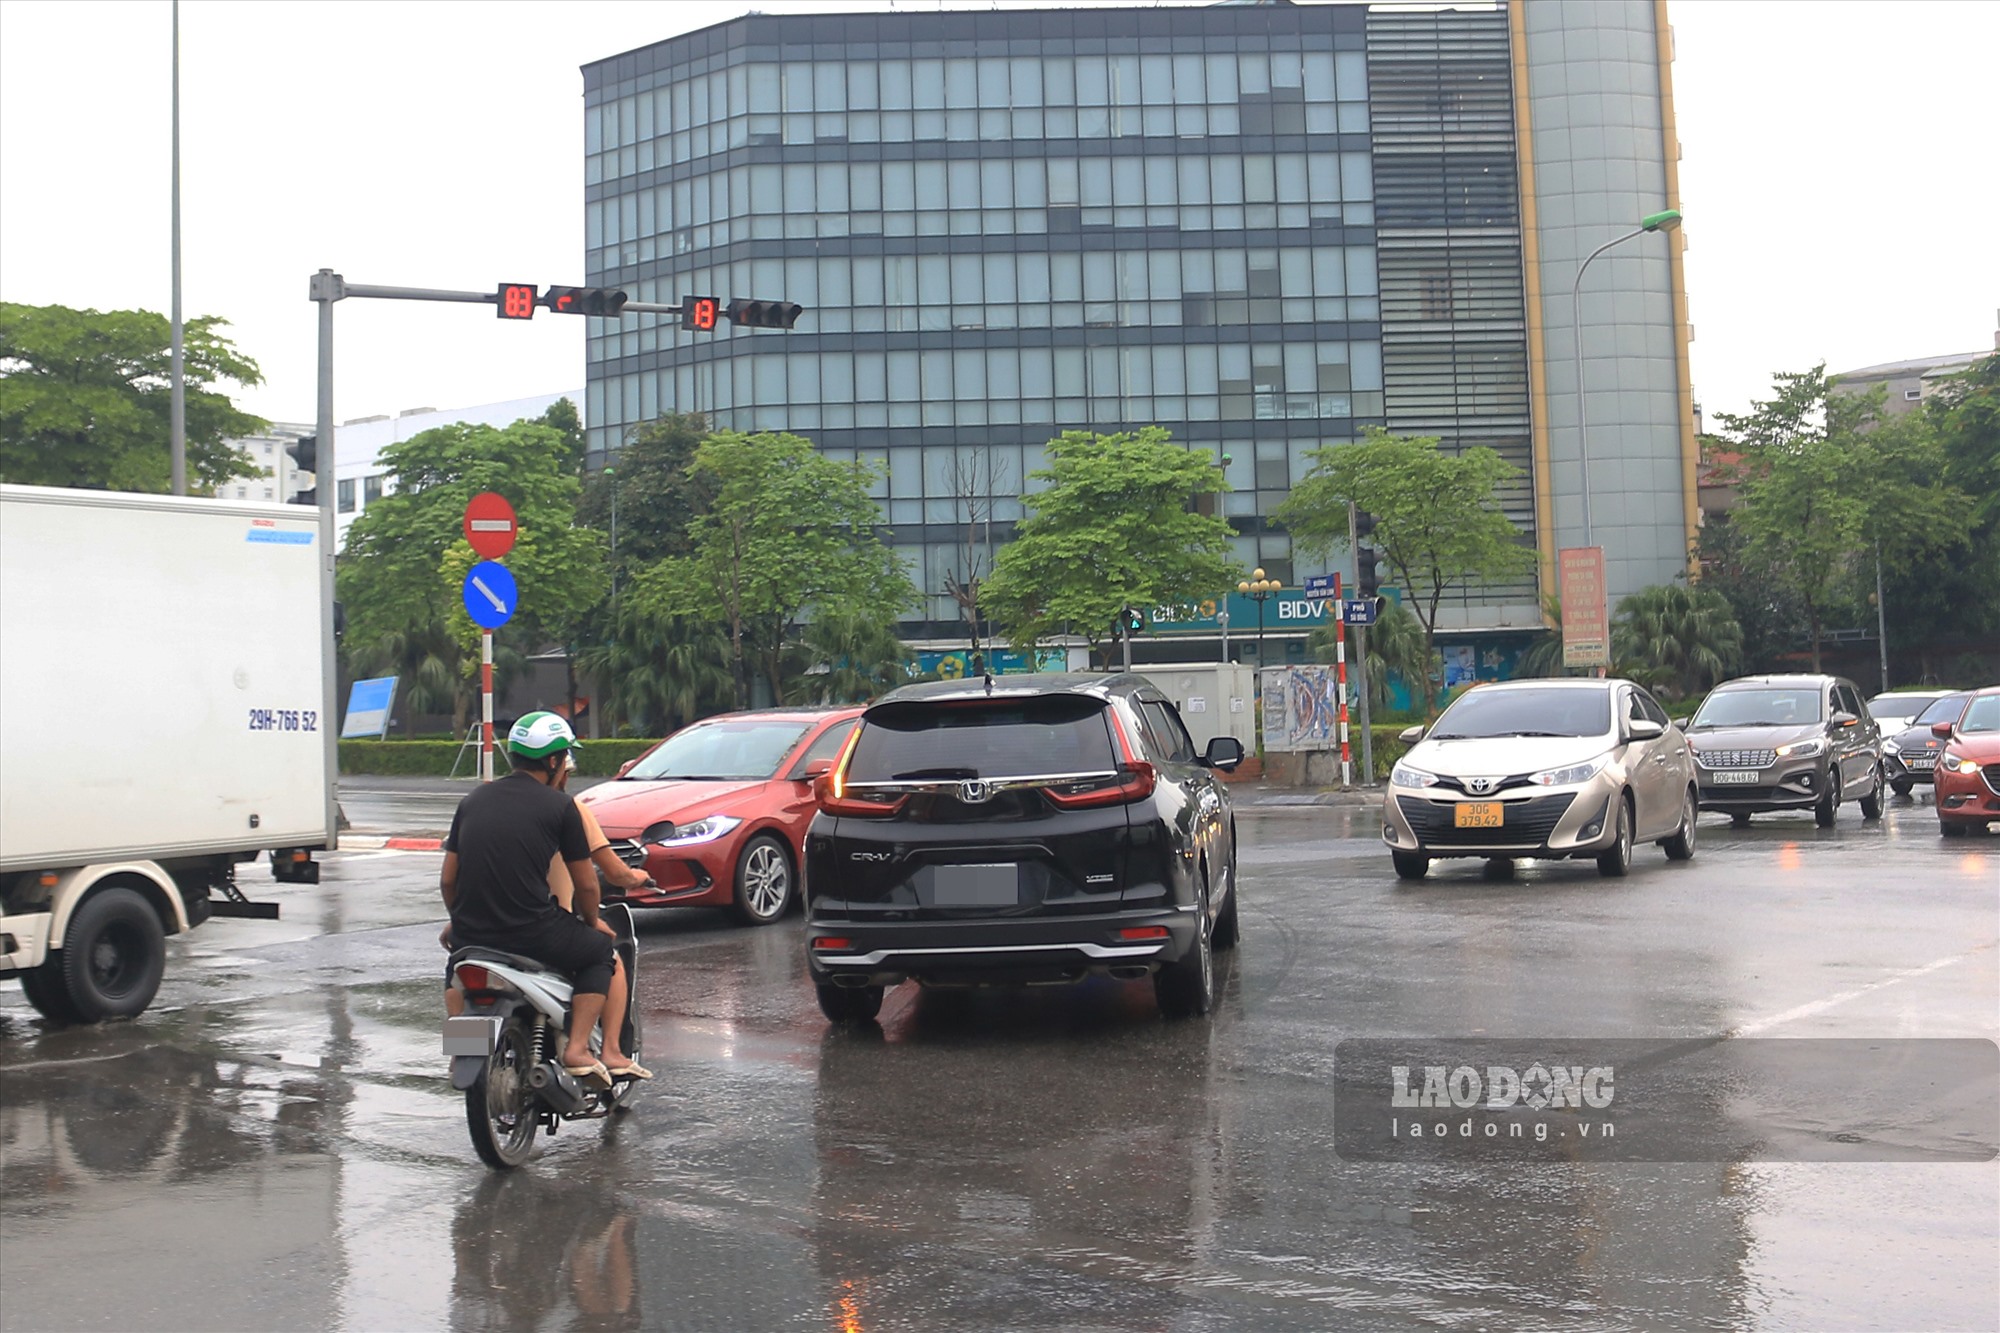 Một số phương tiện vẫn rẽ trái từ đường Huỳnh Tấn Phát sang đường Nguyễn Văn Linh (Quốc lộ 5). Ảnh: Khánh An